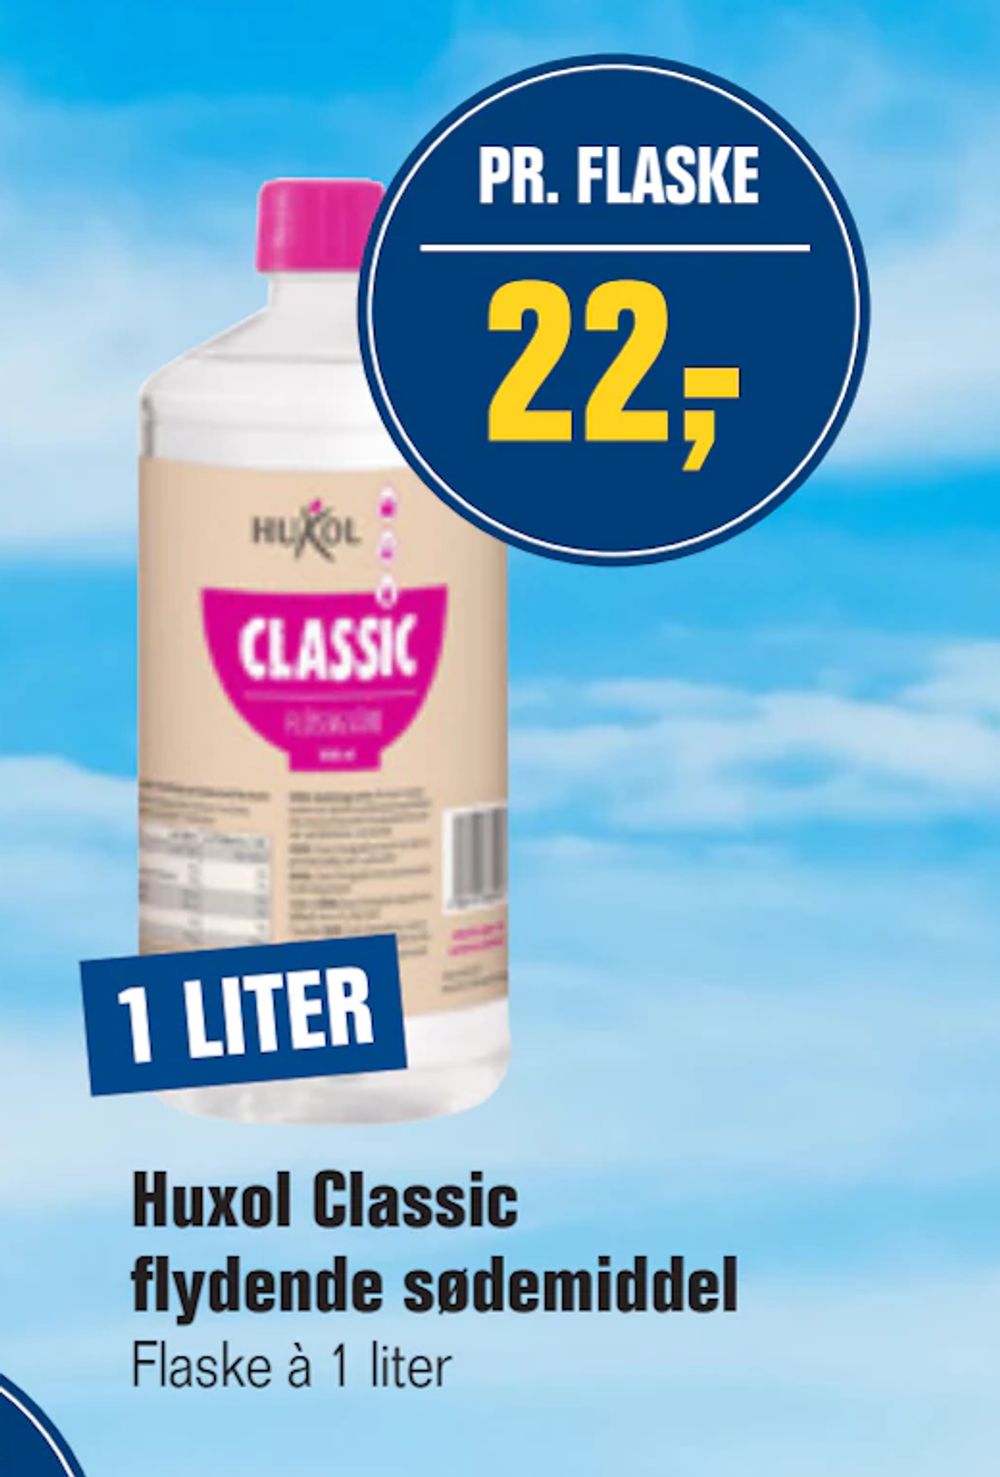 Tilbud på Huxol Classic flydende sødemiddel fra Otto Duborg til 22 kr.